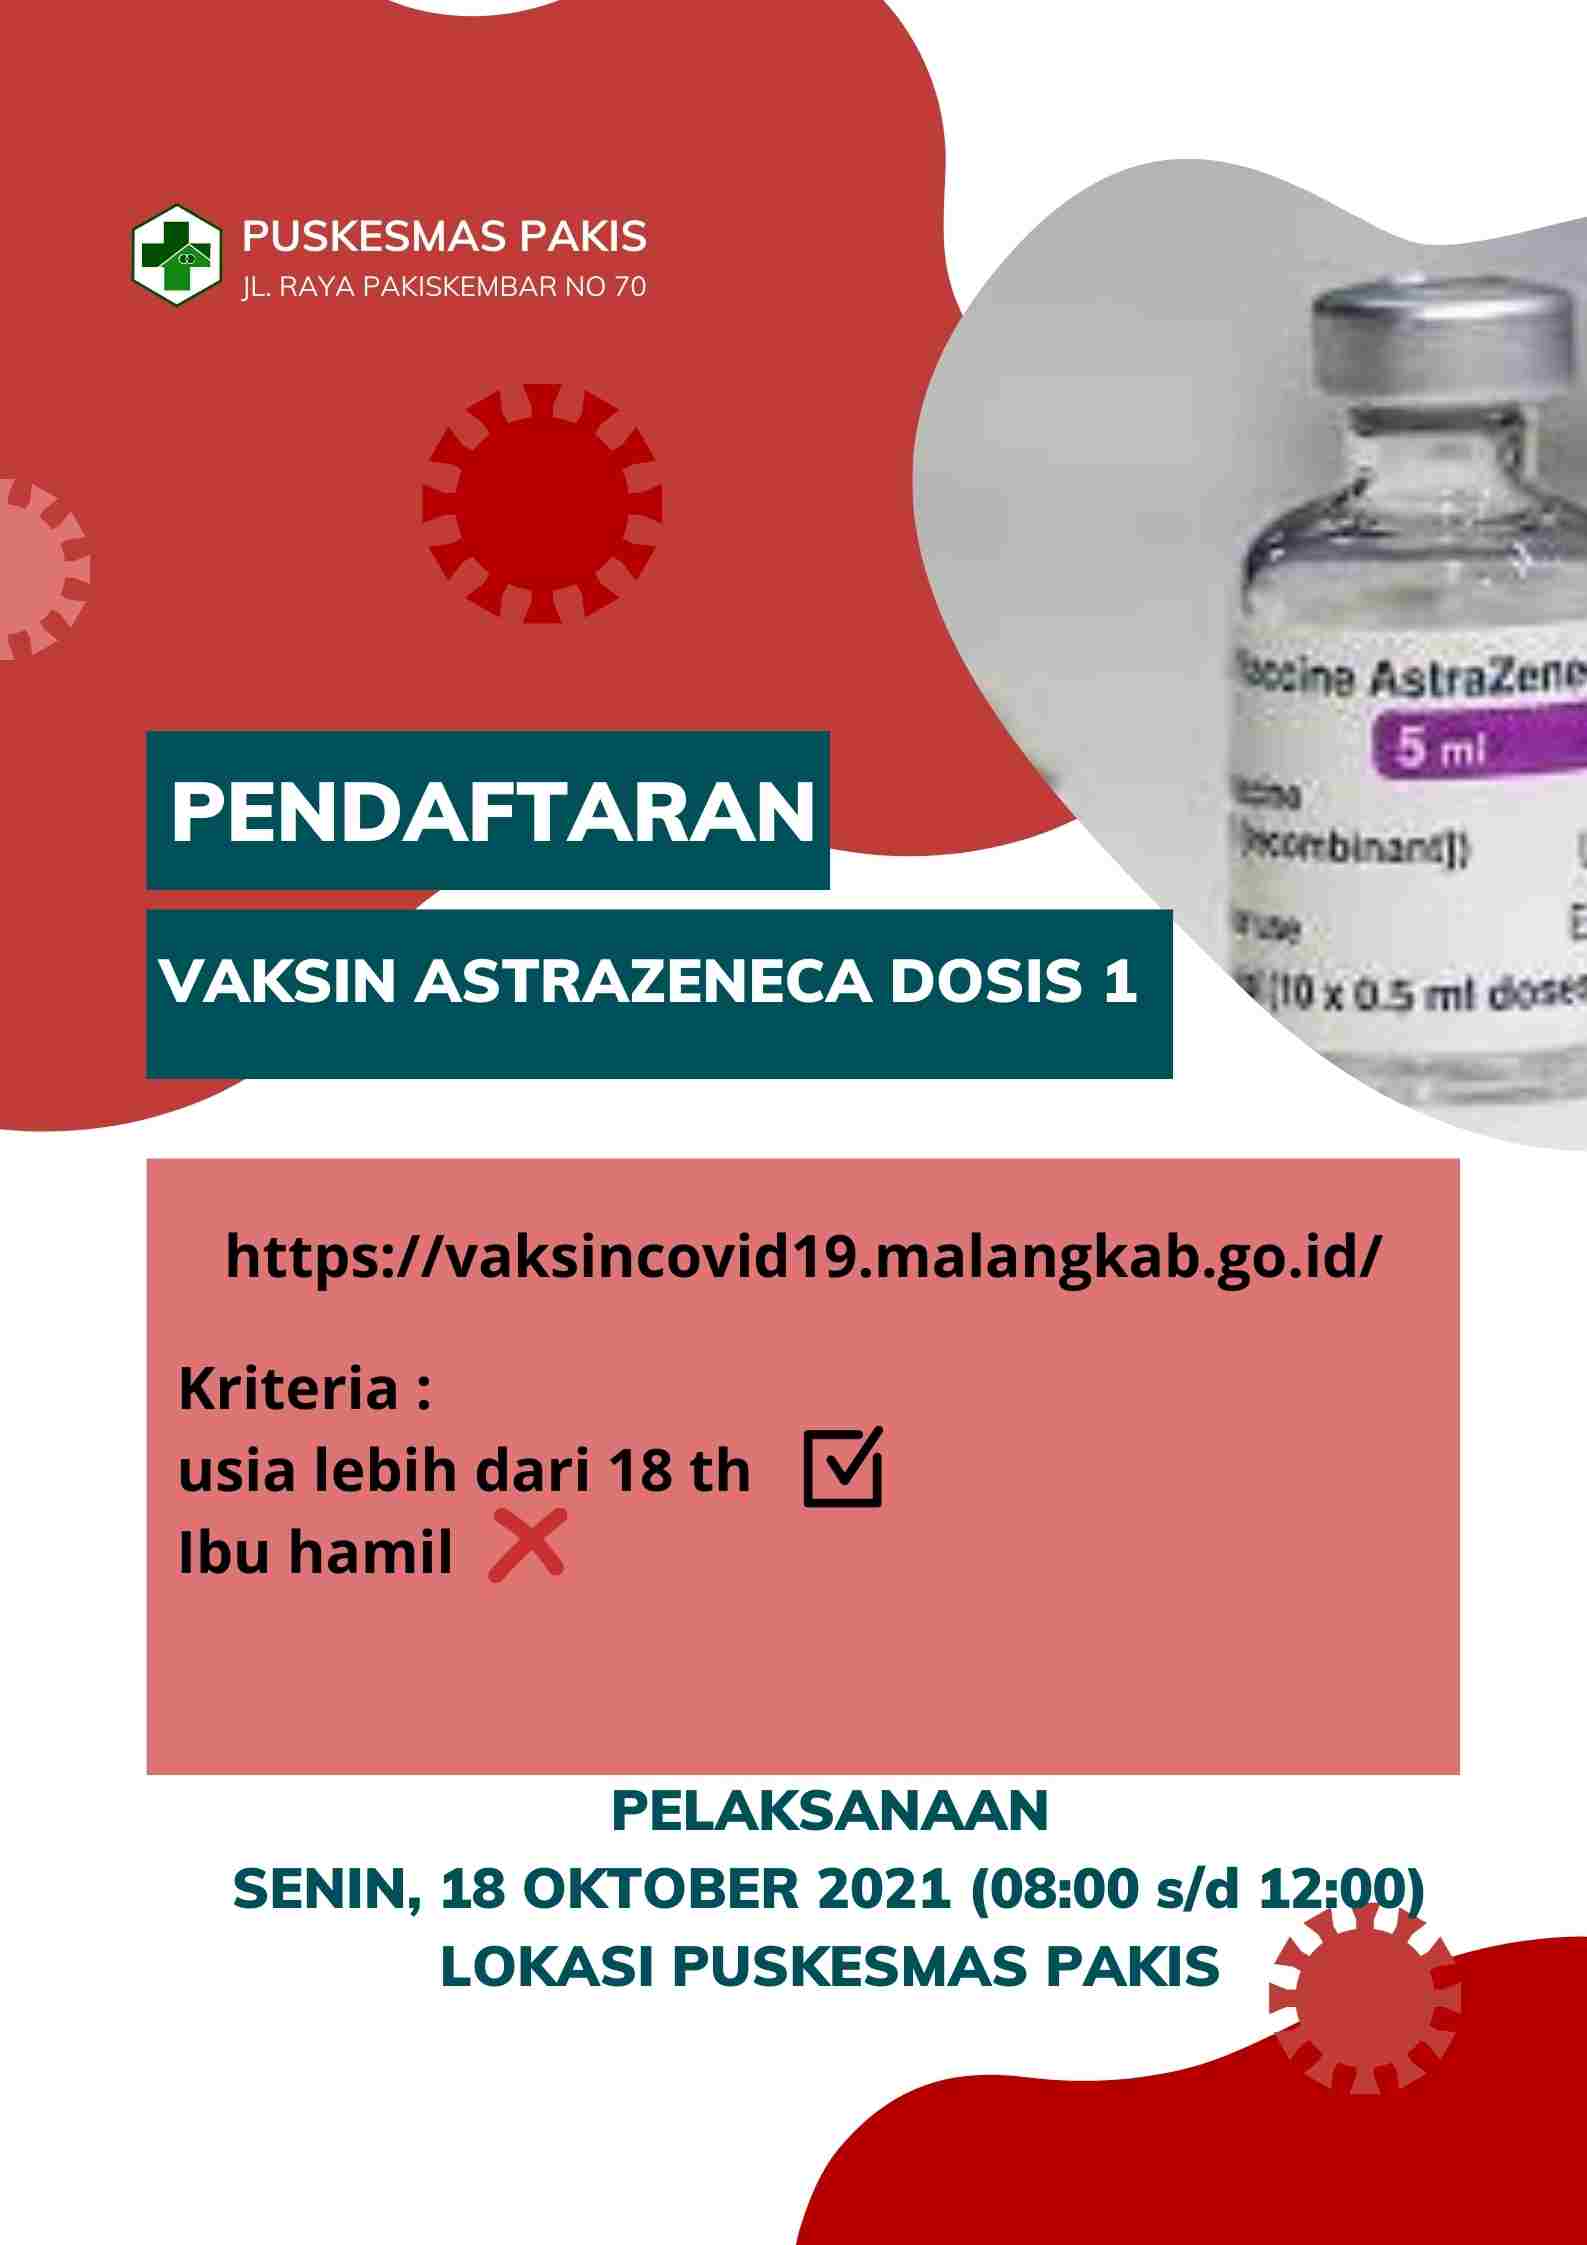 Vaksinasi Covid-19 Puskesmas Pakis ASTRAZANECA